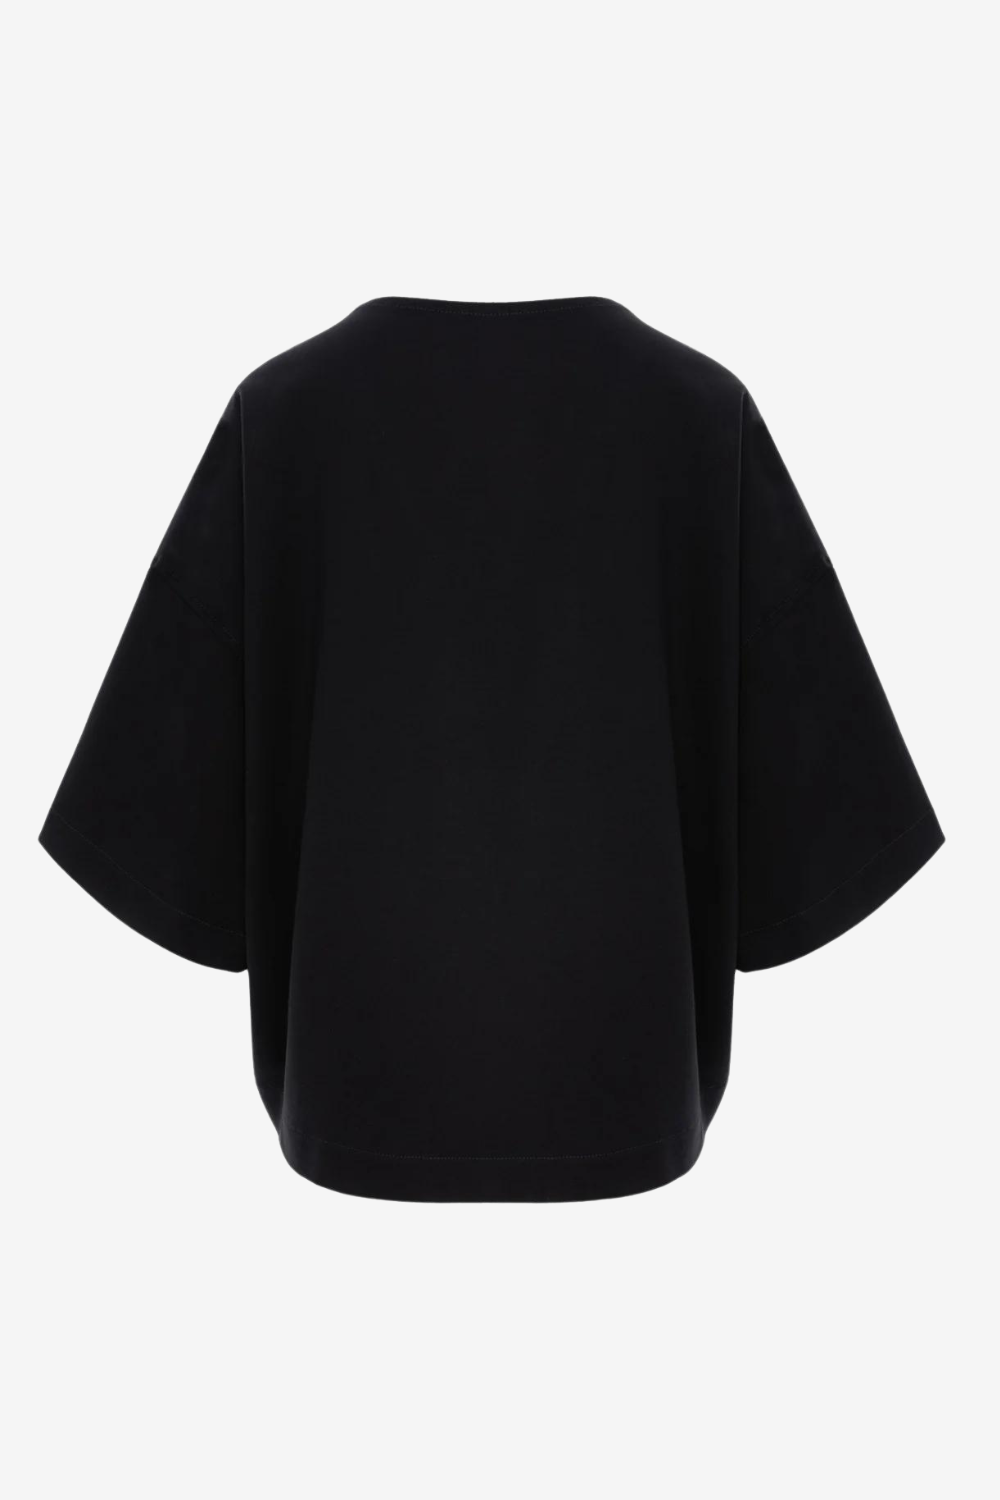 Tricou damă, negru, imprimeu floral Kyo Rose, viscoză premium, croială oversized, detalii elegante (mâneci clopot).